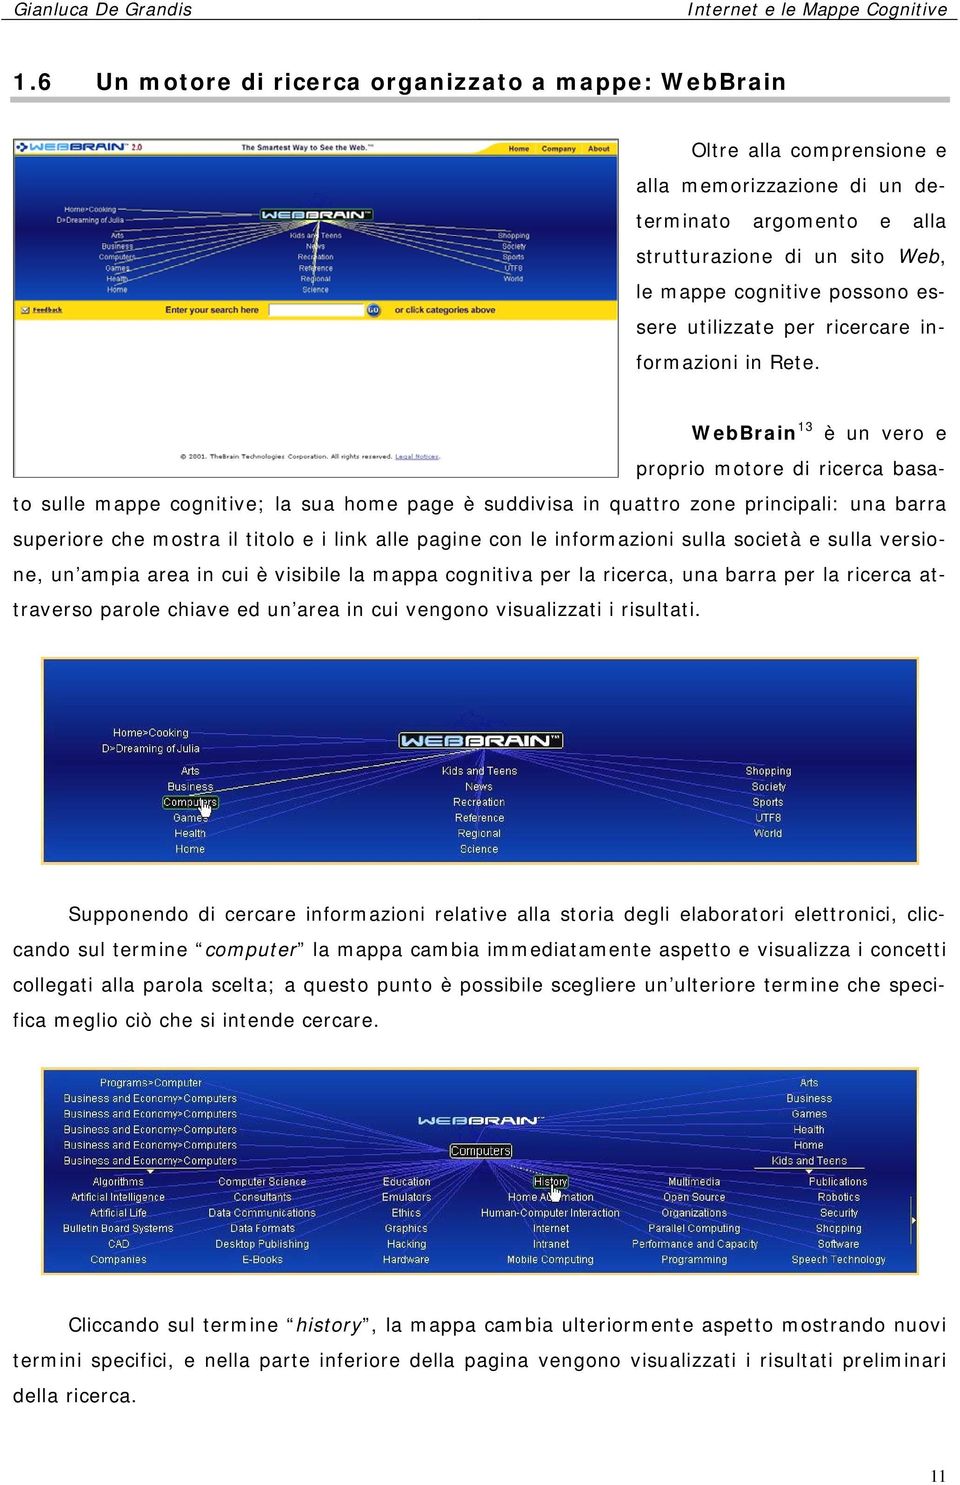 WebBrain 13 è un vero e proprio motore di ricerca basato sulle mappe cognitive; la sua home page è suddivisa in quattro zone principali: una barra superiore che mostra il titolo e i link alle pagine